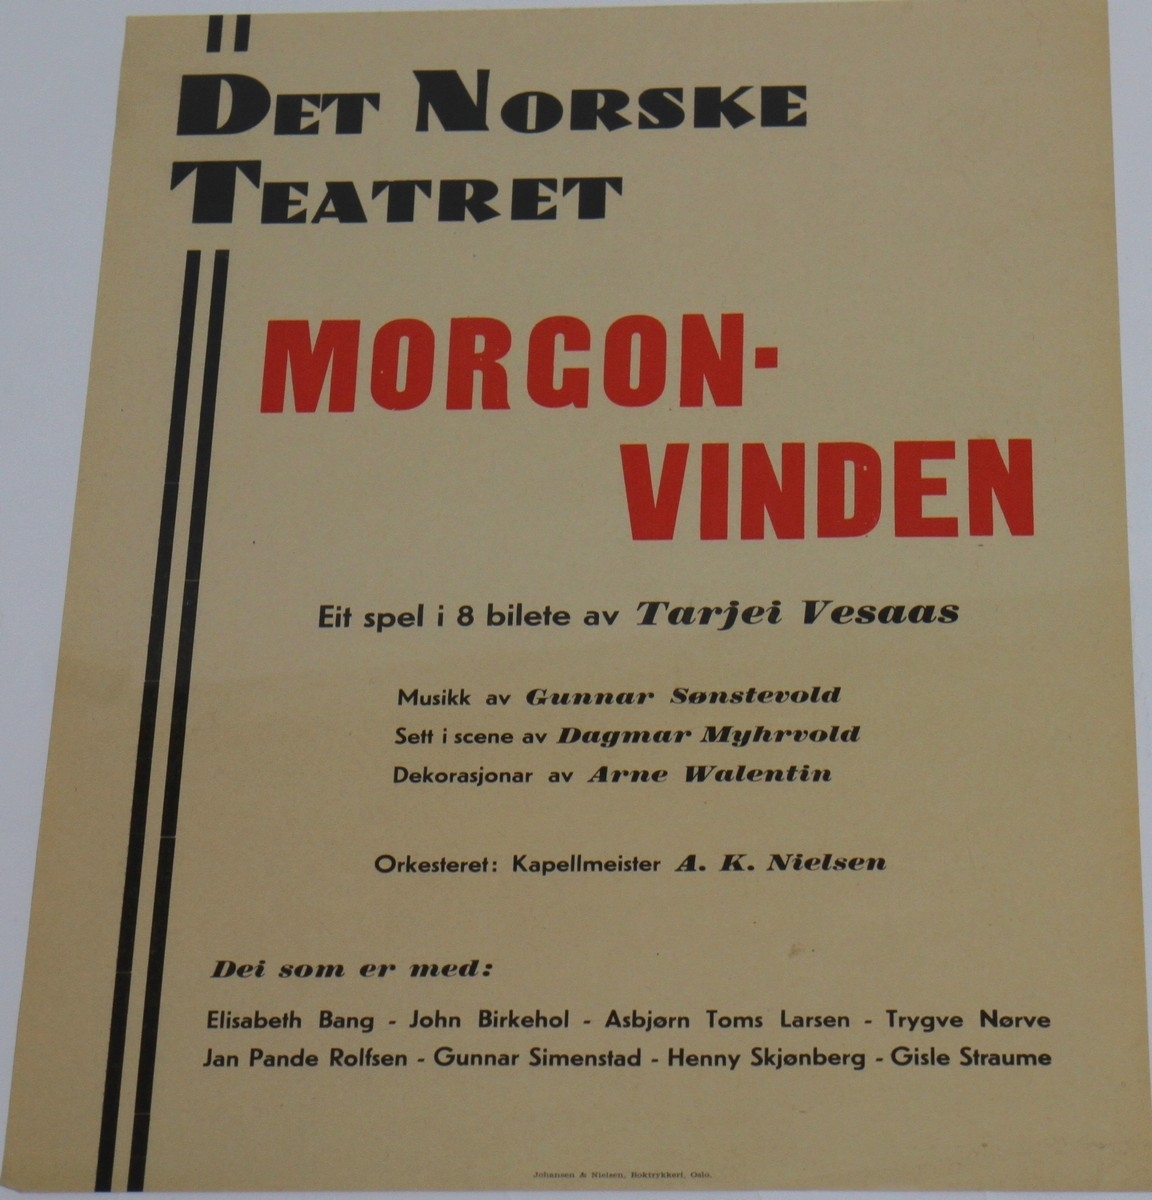 Teaterplakat frå Det Norske Teatret for oppsetjinga av "Morgonvinden". Dette er eit skodespel av Tarjei Vesaas, som kom ut i 1947, og handlar om motstandsarbeidet i eit okkupert land. Stykket var regissert av Dagmar Myhrvold, medan Arne Walentin var ansvarleg for scenografien.

Kjelder:
https://sceneweb.no/nb/production/78841/Morgonvinden-1947-11-25 (Lesedato: 14.02.2020)
https://nbl.snl.no/Tarjei_Vesaas (Lesedato: 14.02.2020)